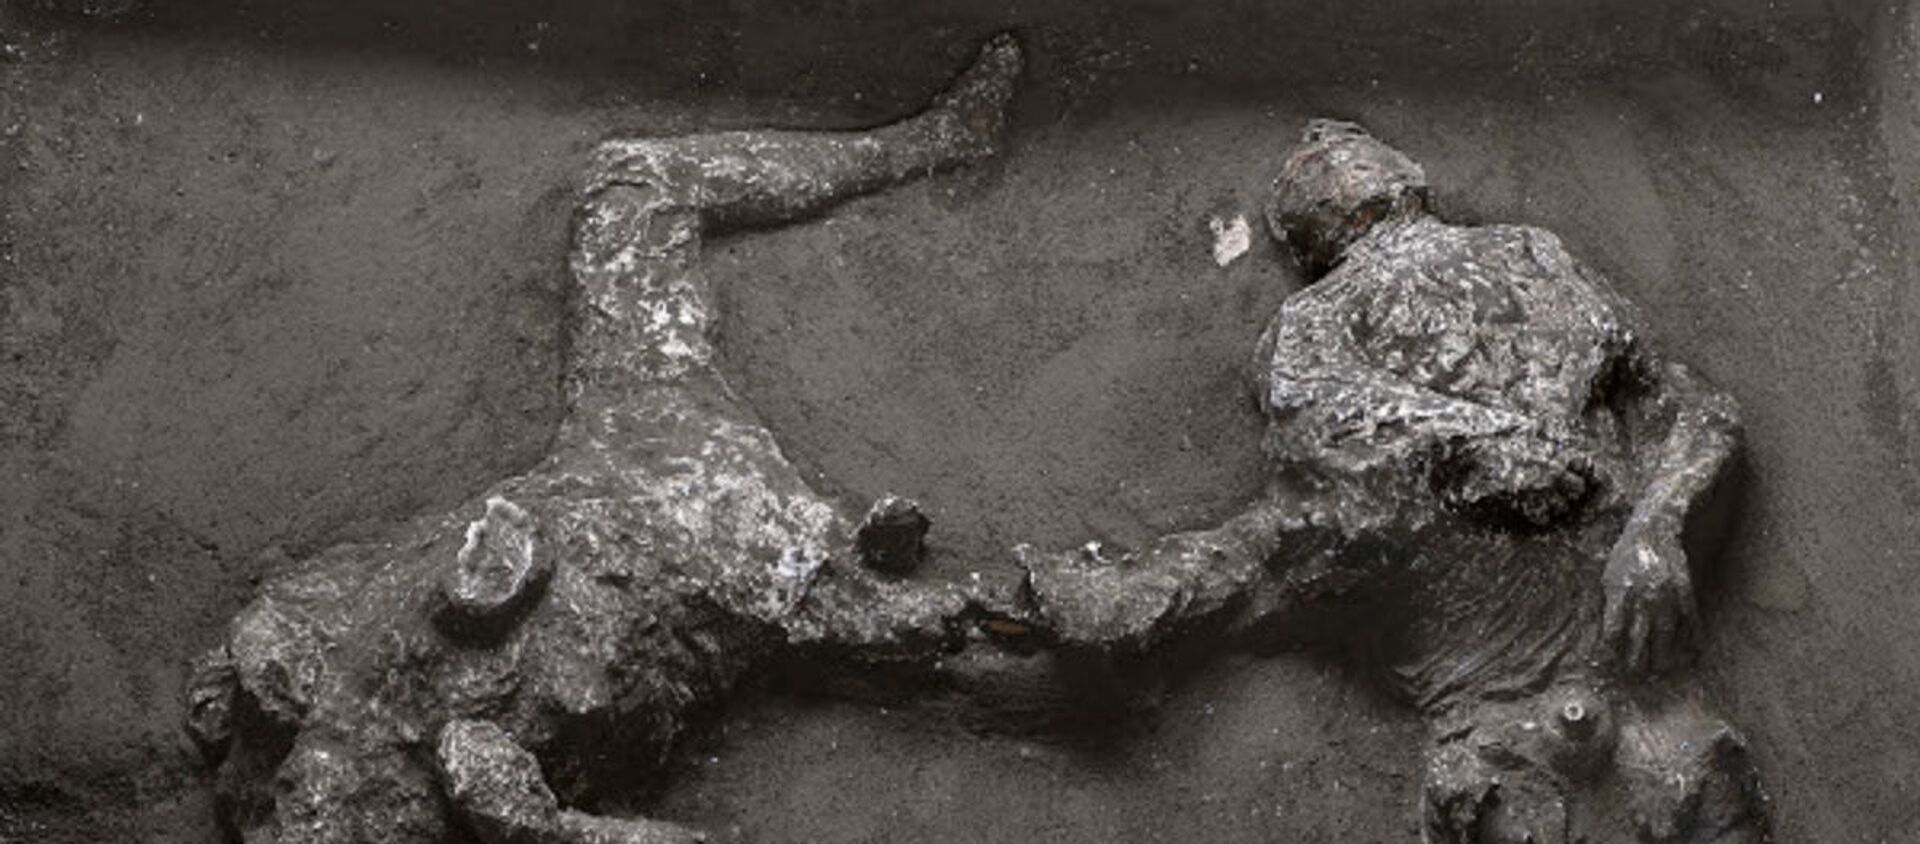 Los restos de dos hombres muertos en la erupción del Vesubio  - Sputnik Mundo, 1920, 22.11.2020